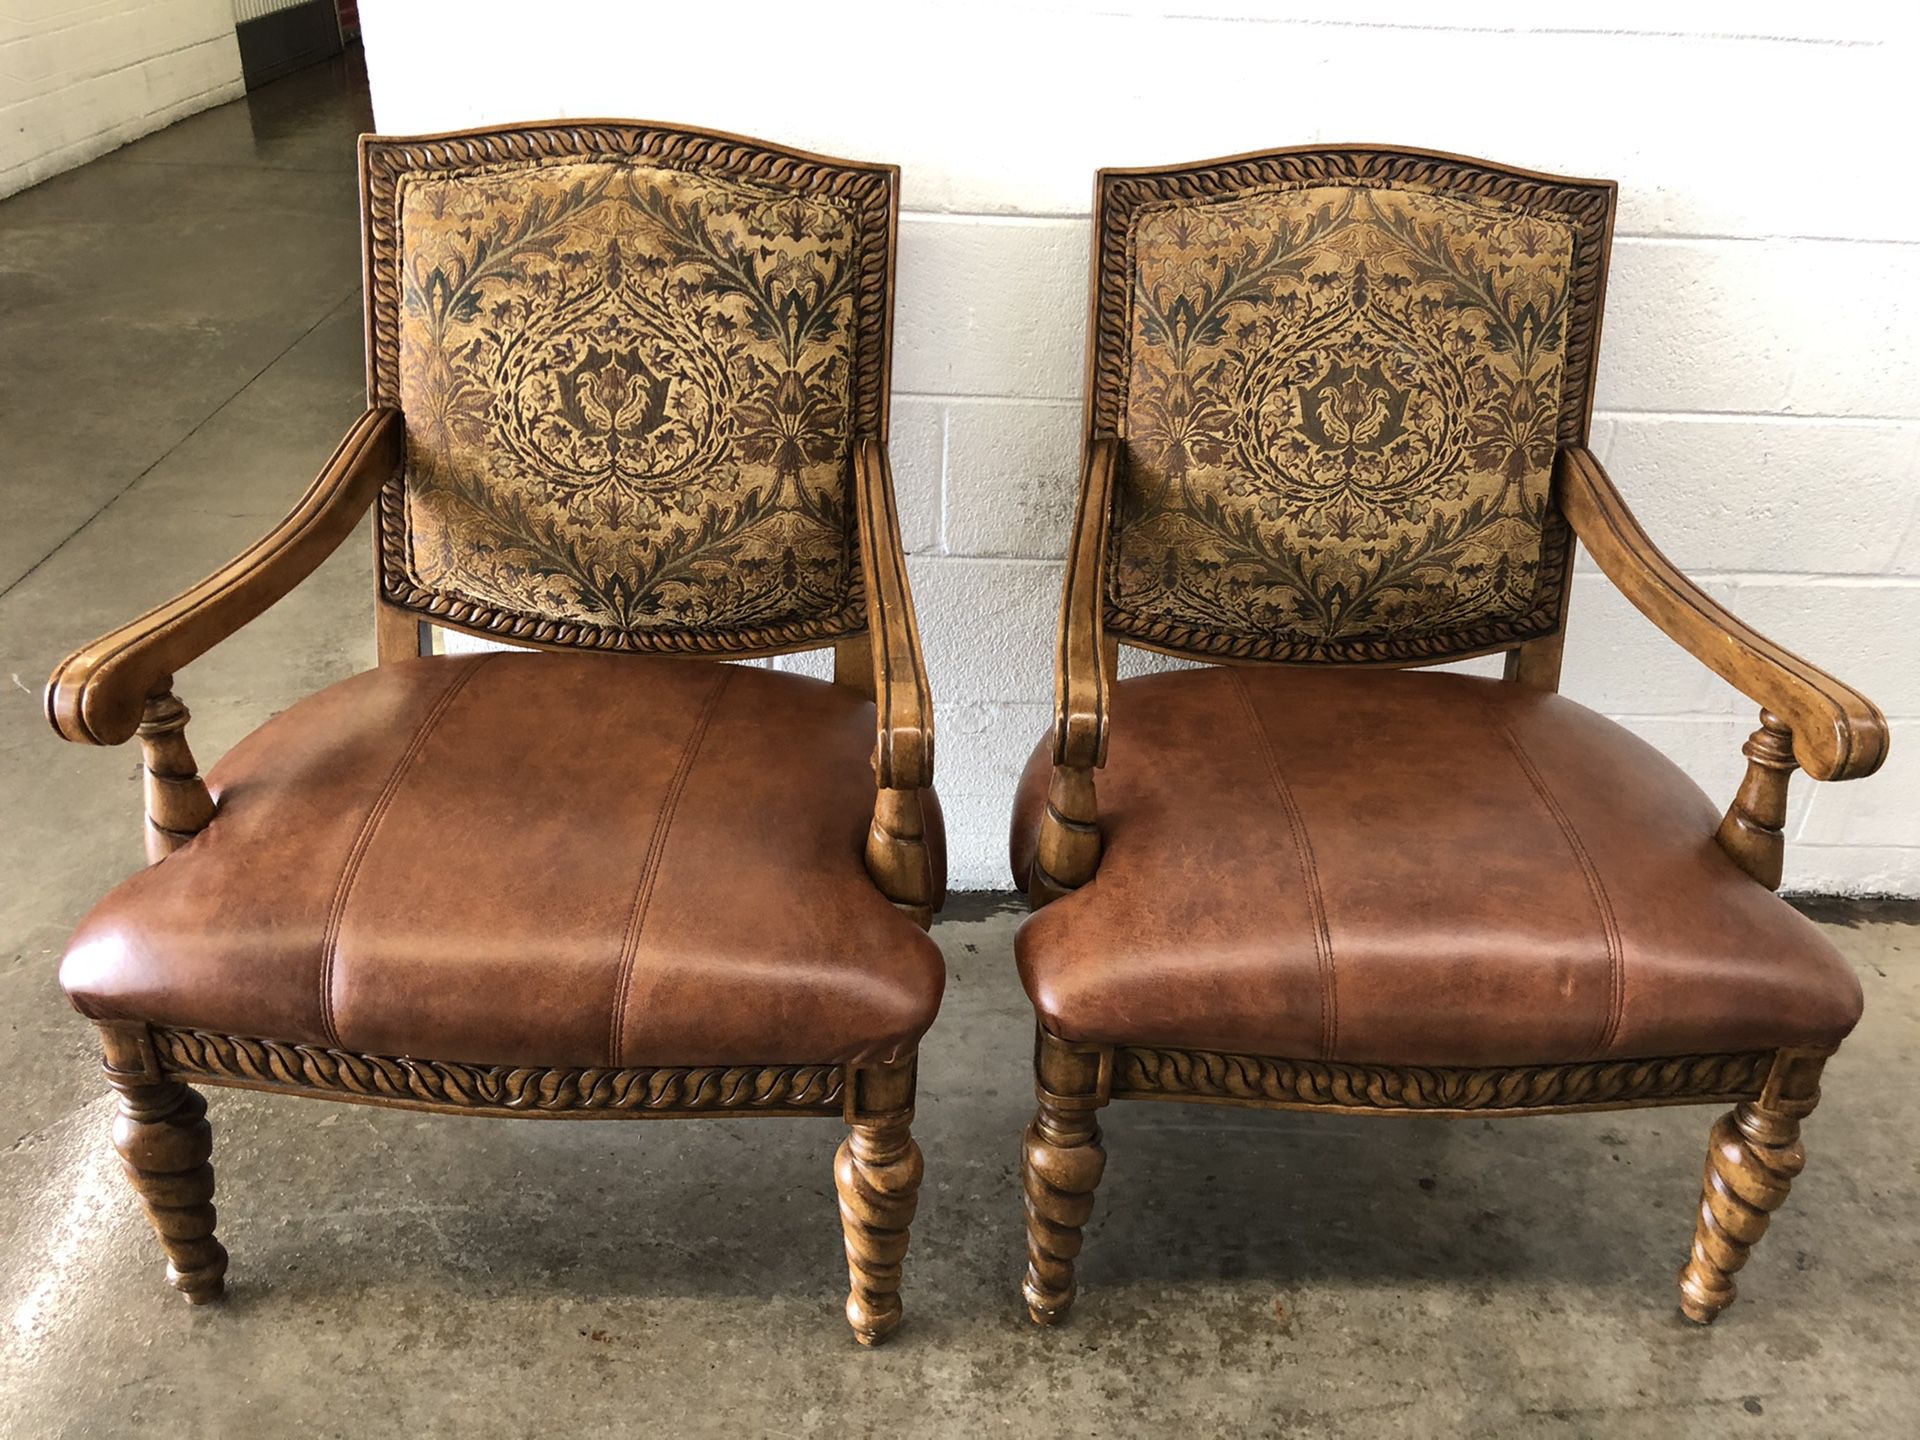 Nice side chairs $120